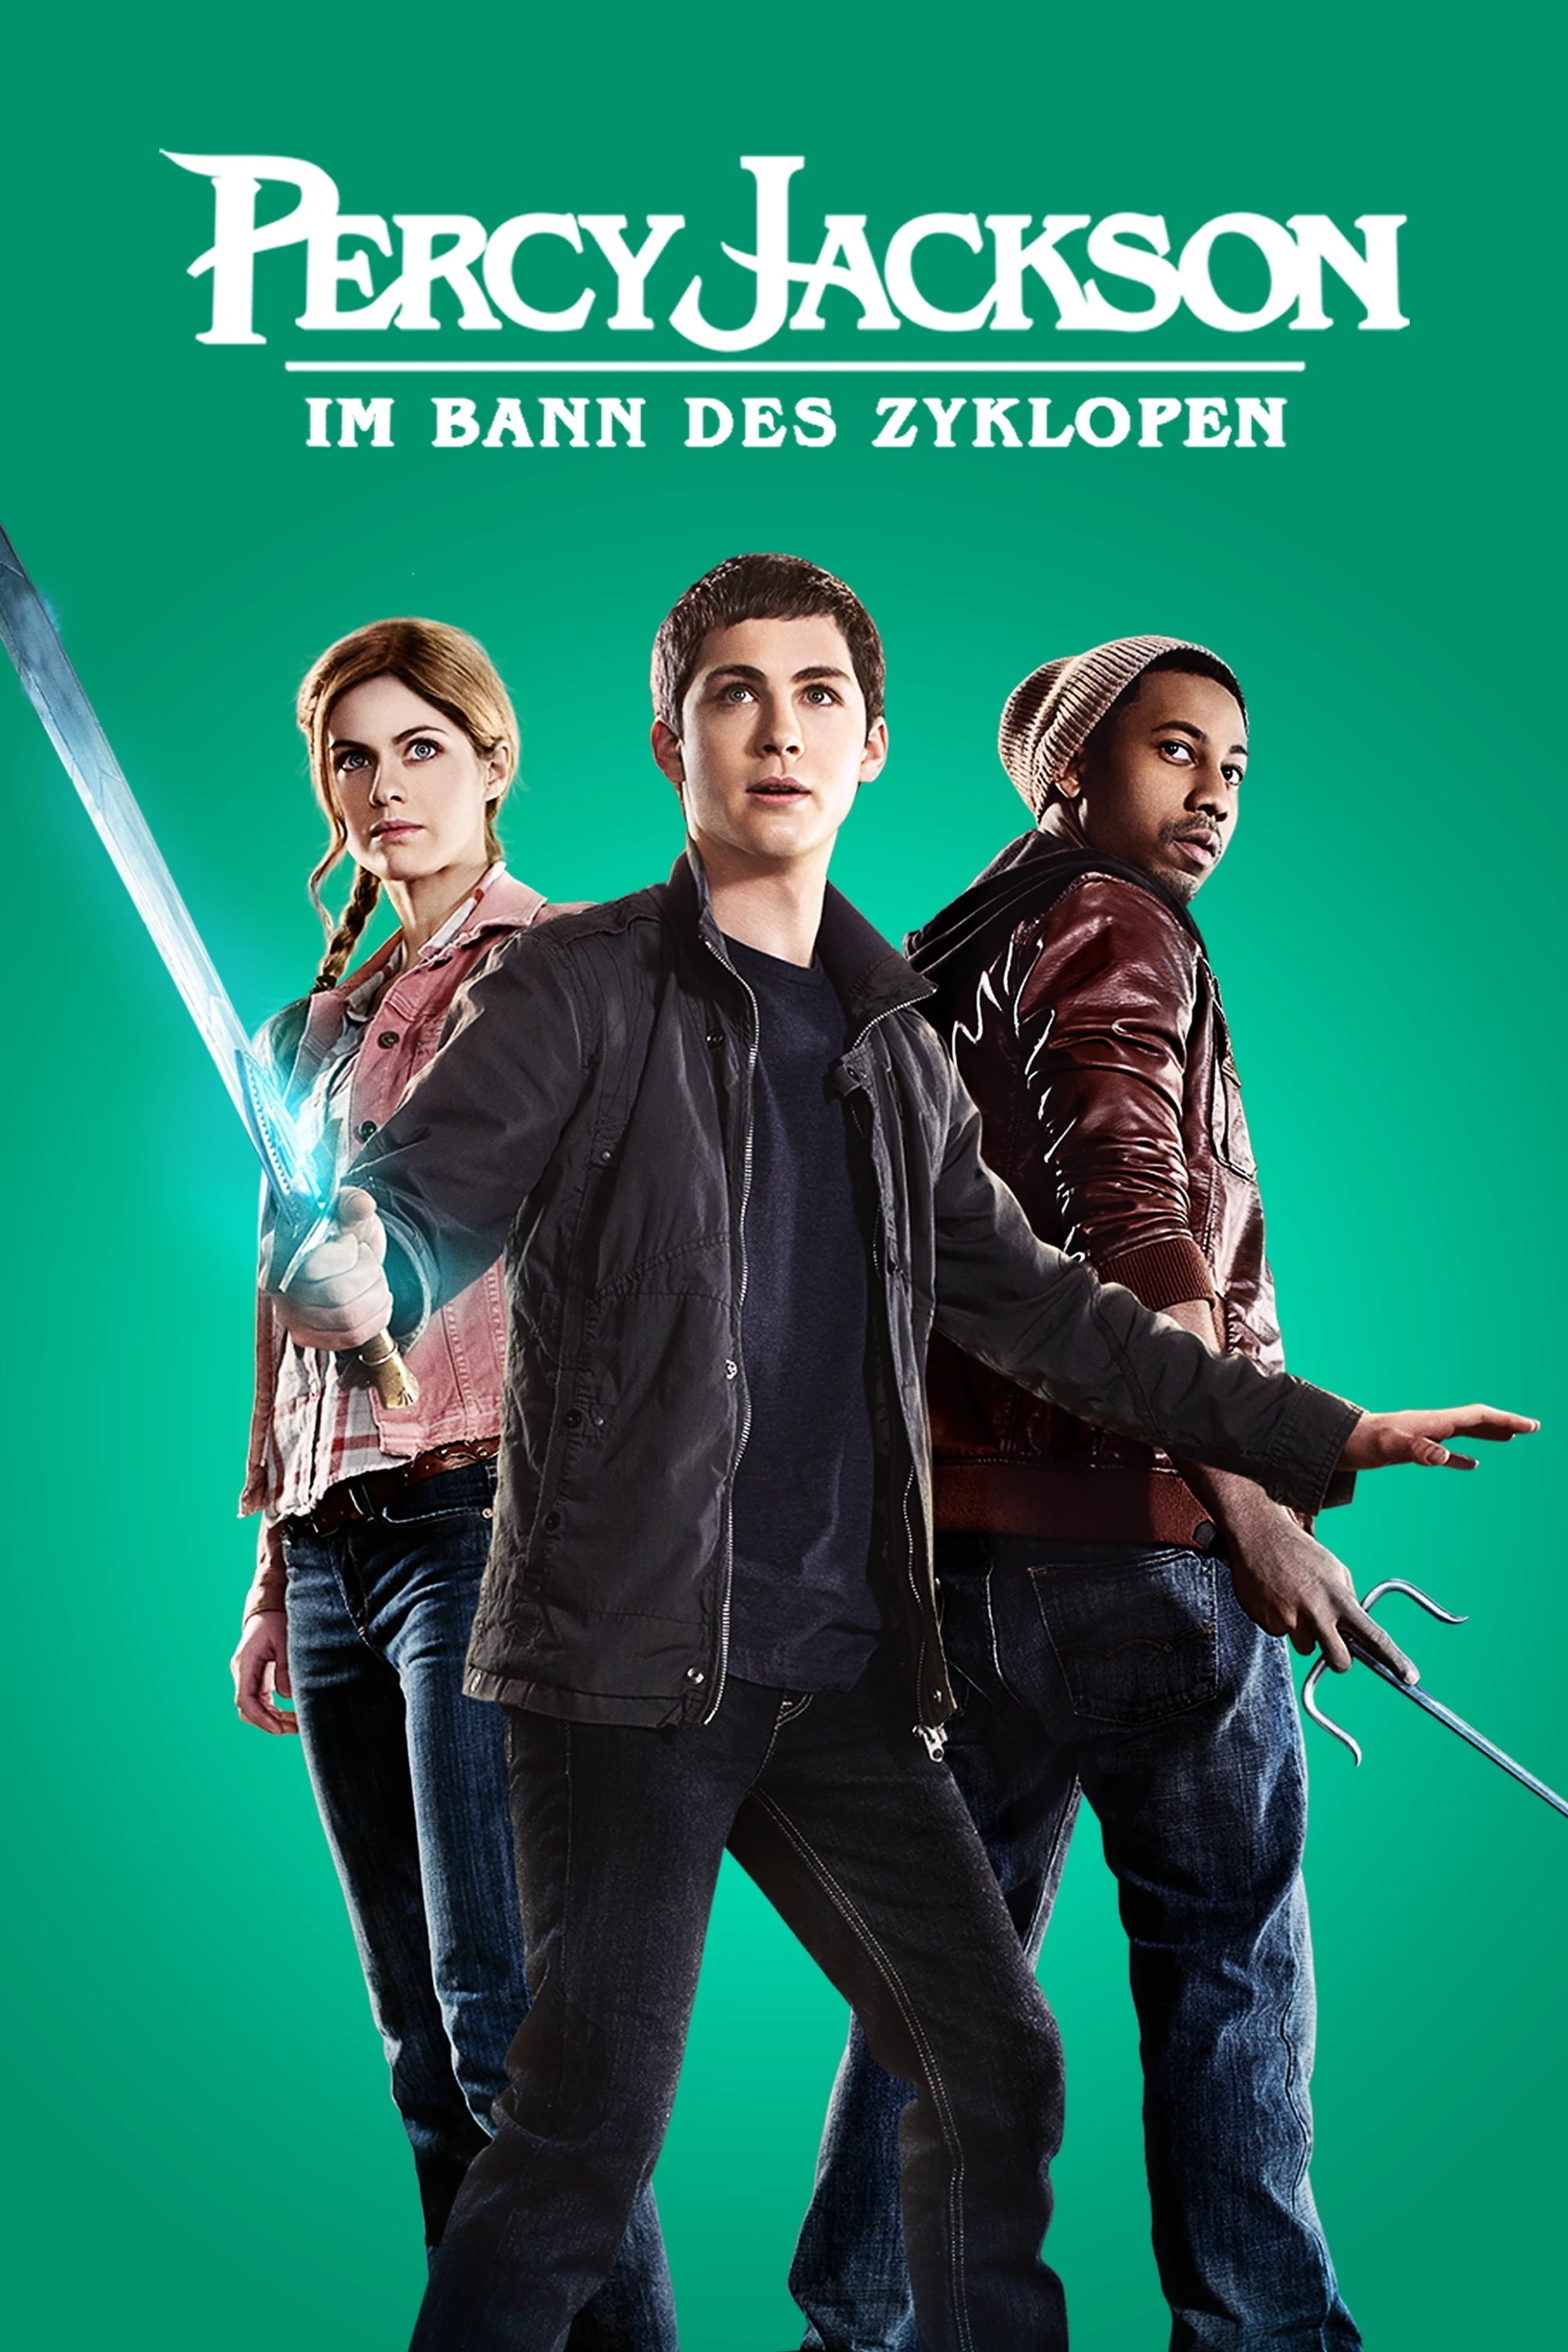 Percy Jackson - Im Bann des Zyklopen (2013) Ganzer Film Deutsch - Percy Jackson Im Bann Des Zyklopen Movie